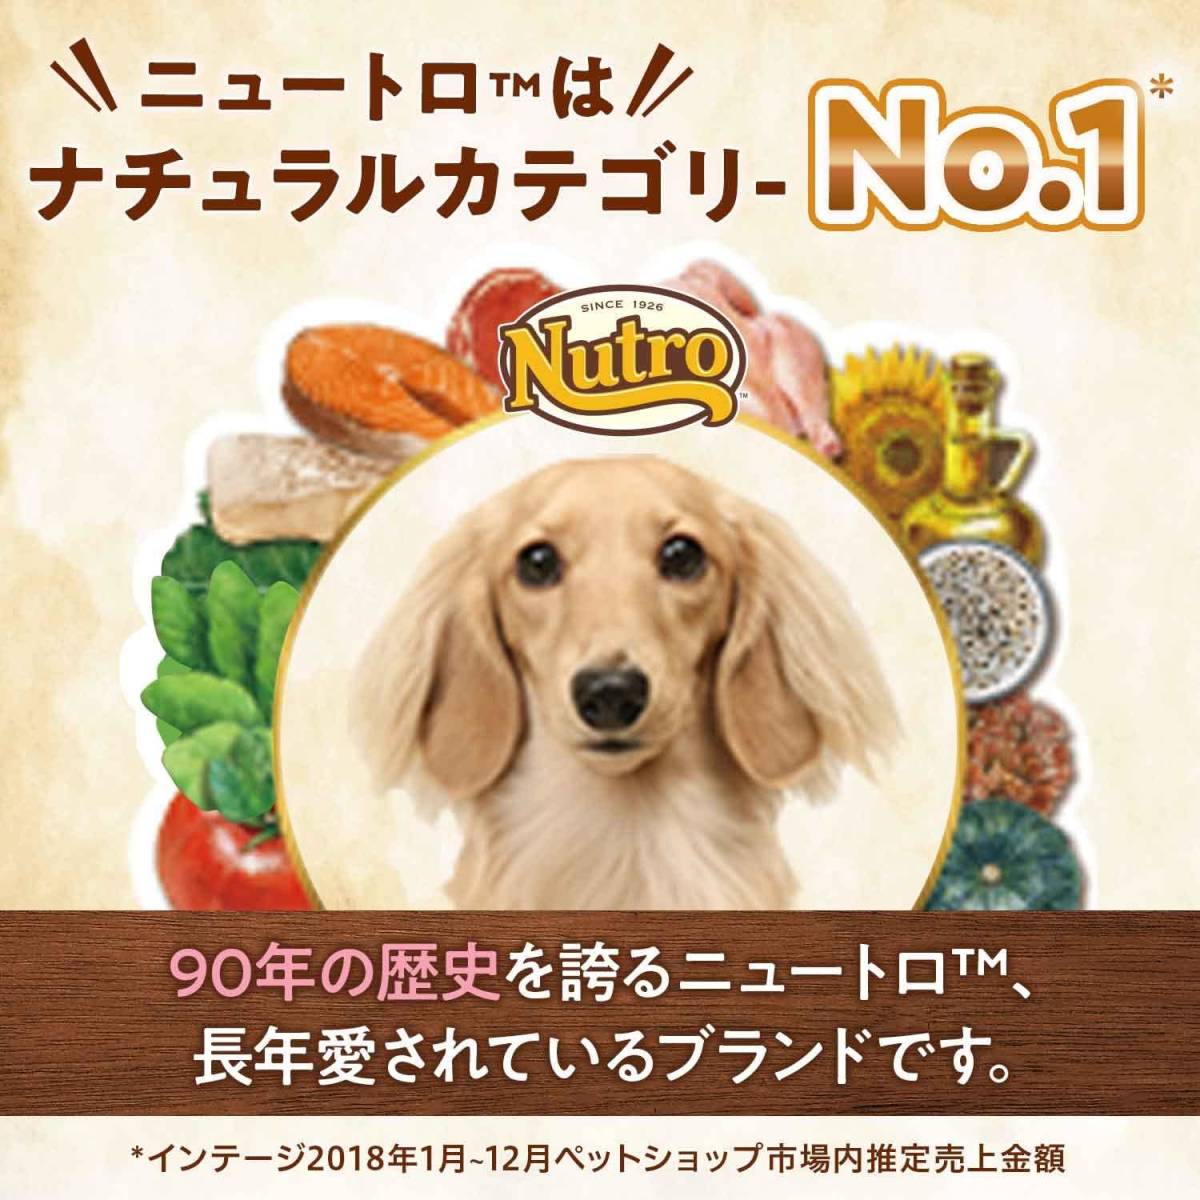 2) 3kg(約1か月分) Nutro ニュートロ シュプレモ 子犬用 小粒 3kg ドッグフード【パピー/自然素材/着色料 無添_画像2